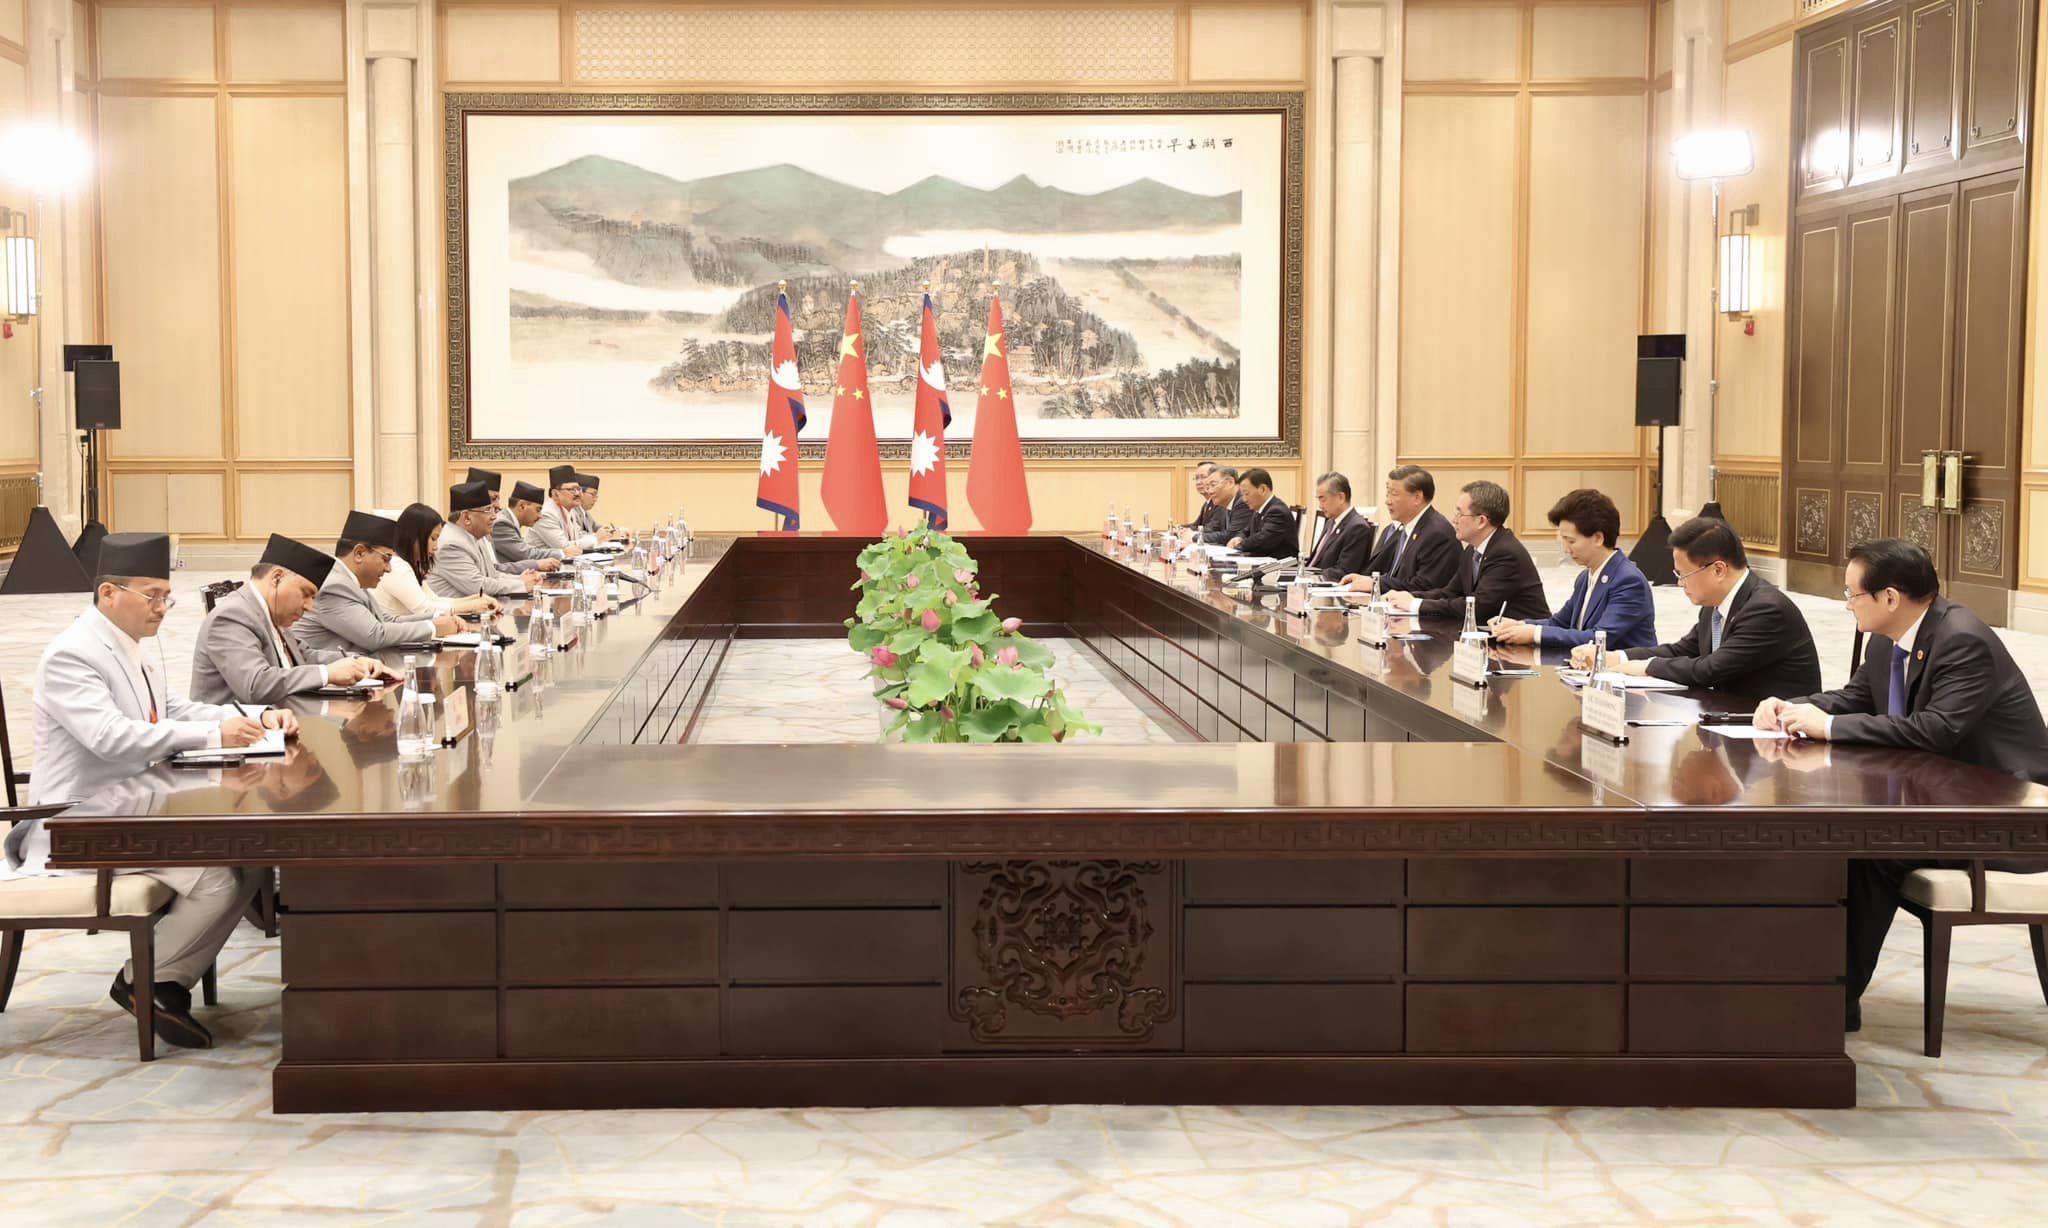 प्रधानमन्त्रीको चीन भ्रमणका क्रममा दुई देशबीच १३ बुँदे समझदारीपत्रमा हस्ताक्षर